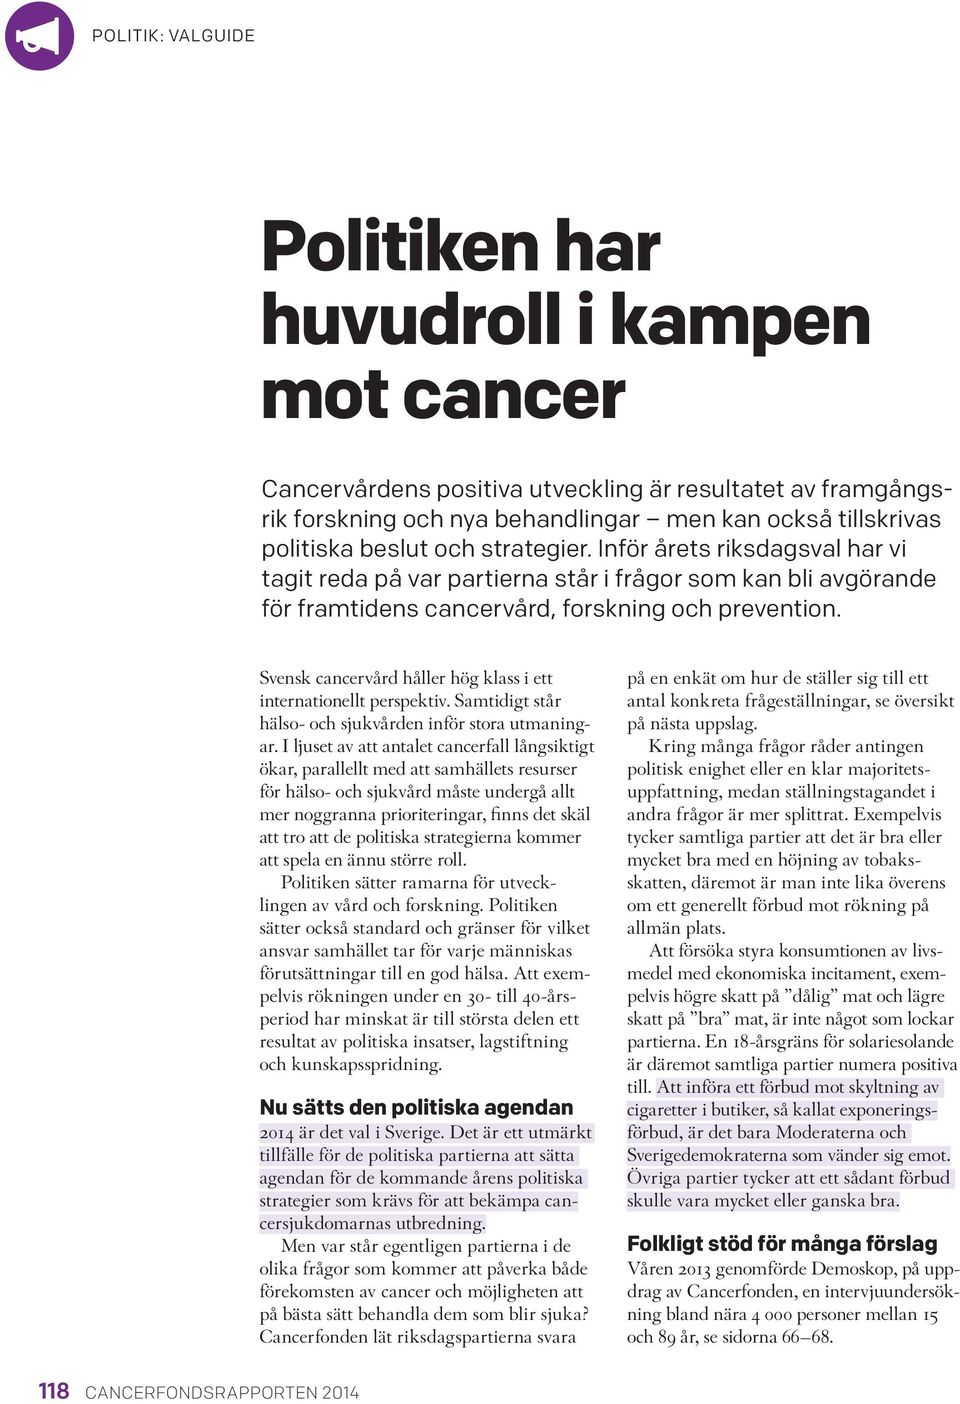 Svensk cancervård håller hög klass i ett internationellt perspektiv. Samtidigt står hälso- och sjukvården inför stora utmaningar.